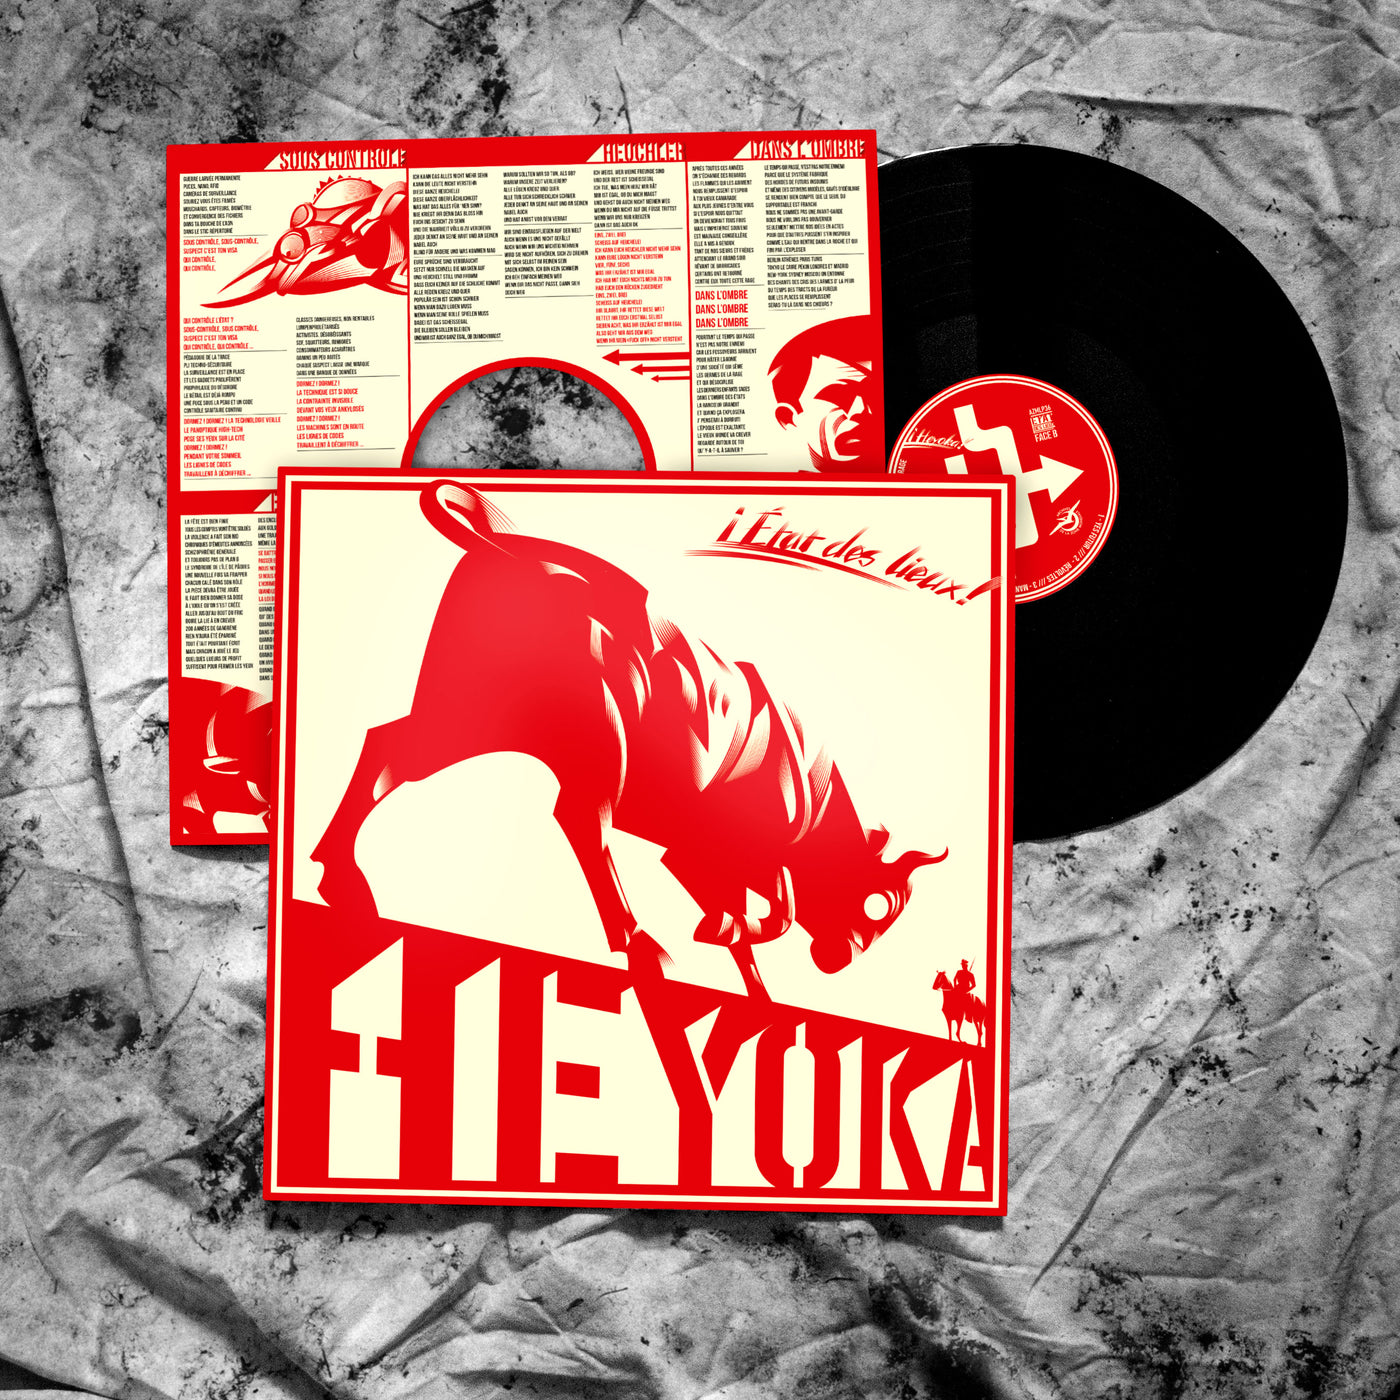 vinyle de l'album "Etat des lieux" du groupe Anarchopunk HEYOKA sorti en 2012 : vinyle noir, sous-pochjette trouée imprimée avec paroles et illustrations. Pochette avec finition satiné.